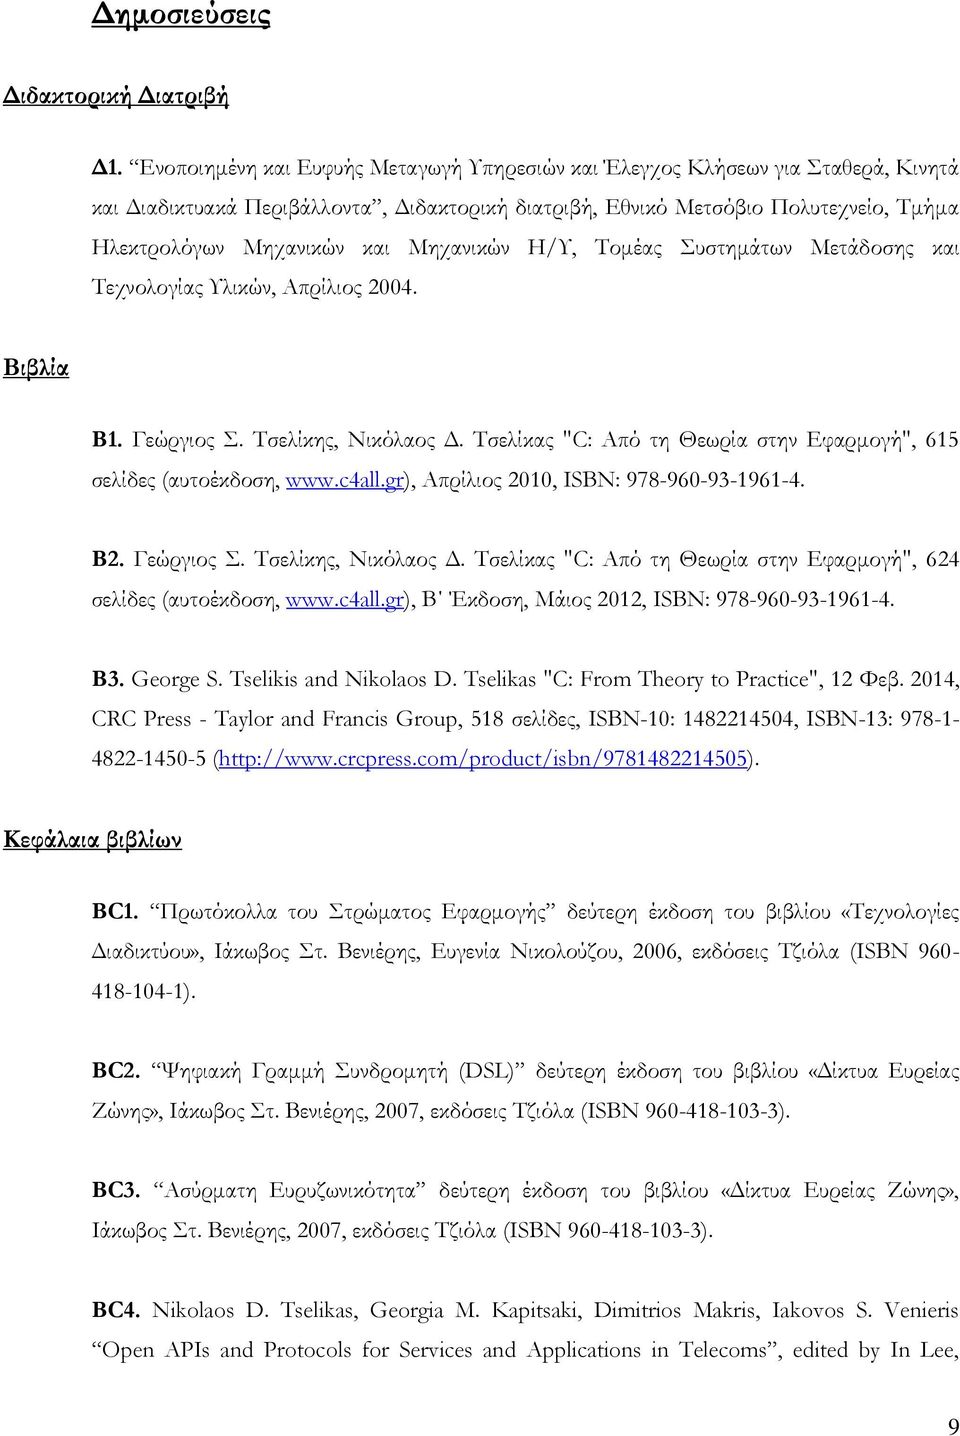 Μηχανικών Η/Υ, Τομέας Συστημάτων Μετάδοσης και Τεχνολογίας Υλικών, Απρίλιος 2004. Βιβλία Β1. Γεώργιος Σ. Τσελίκης, Νικόλαος Δ. Τσελίκας "C: Από τη Θεωρία στην Εφαρμογή", 615 σελίδες (αυτοέκδοση, www.